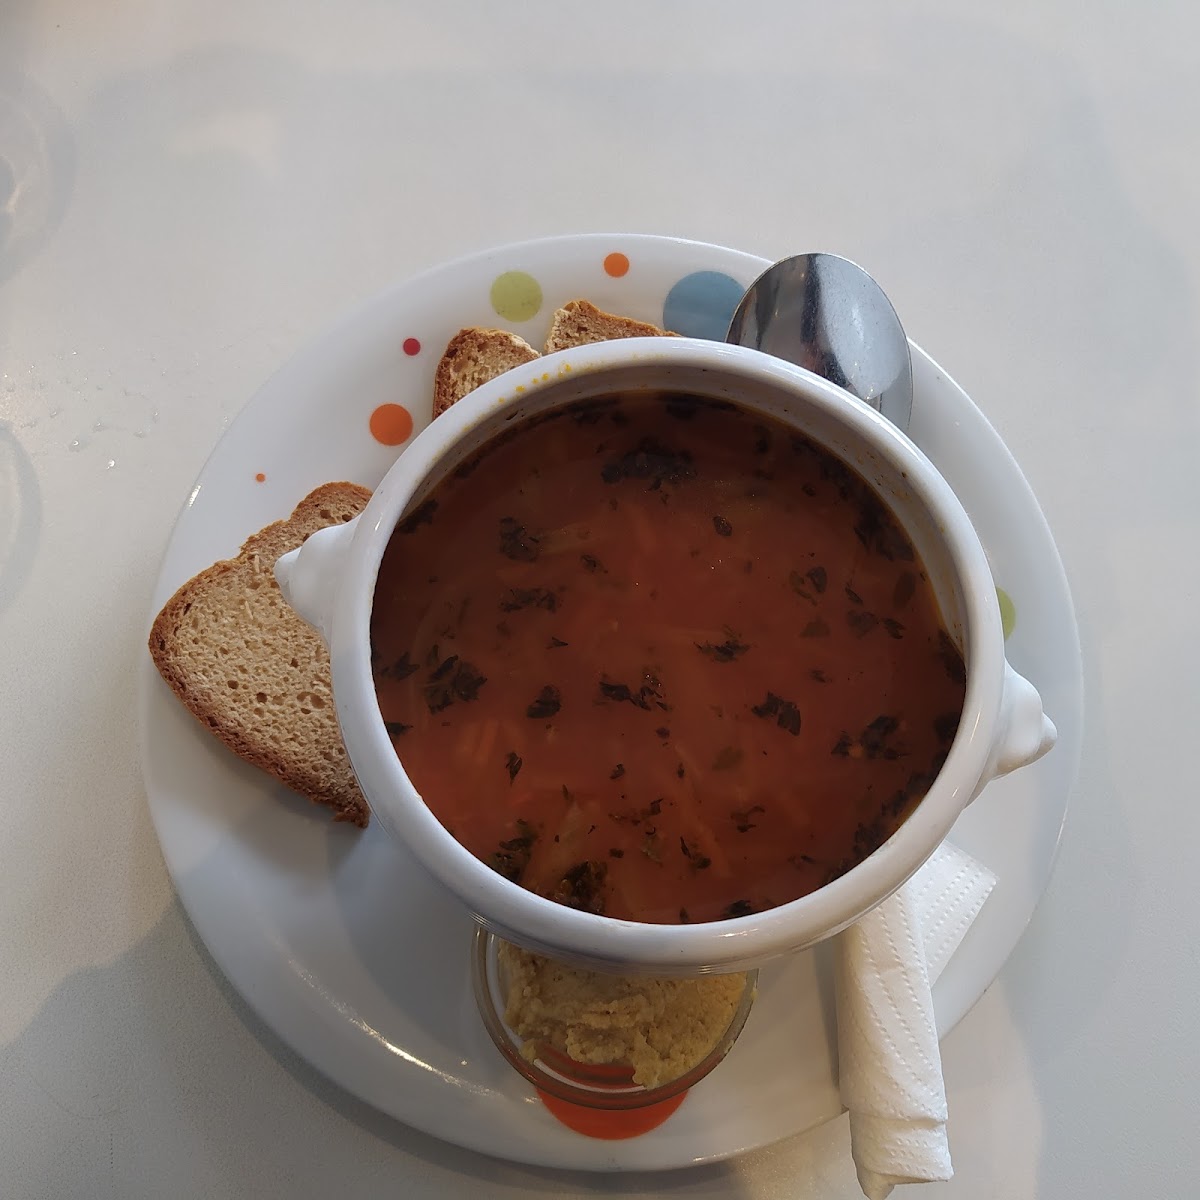 Italian soup